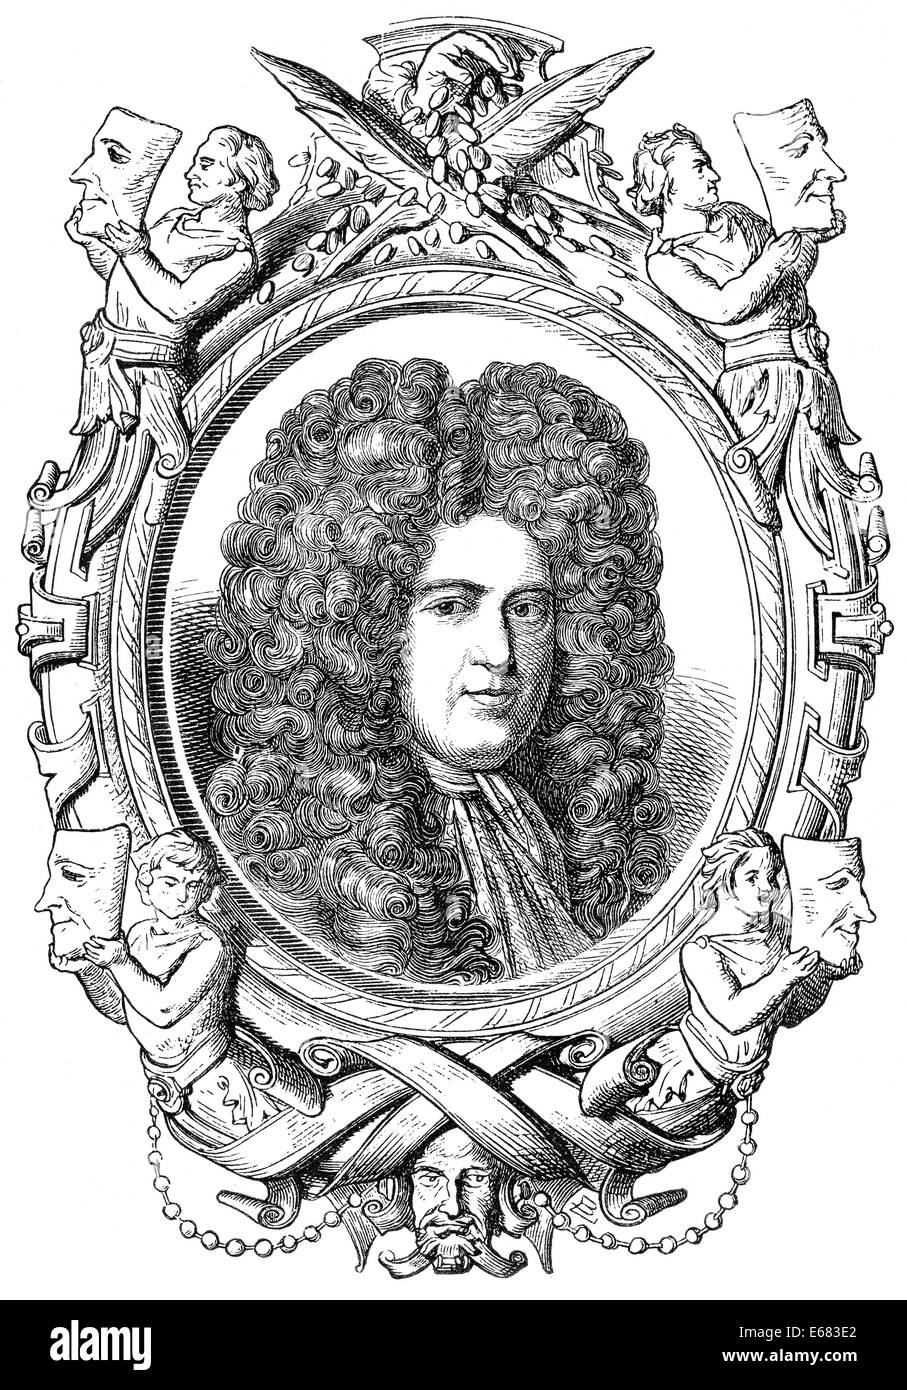 Ézéchiel Spanheim, Freiherr von, 1629-1710, un diplomate et érudit, germano-suisse Banque D'Images